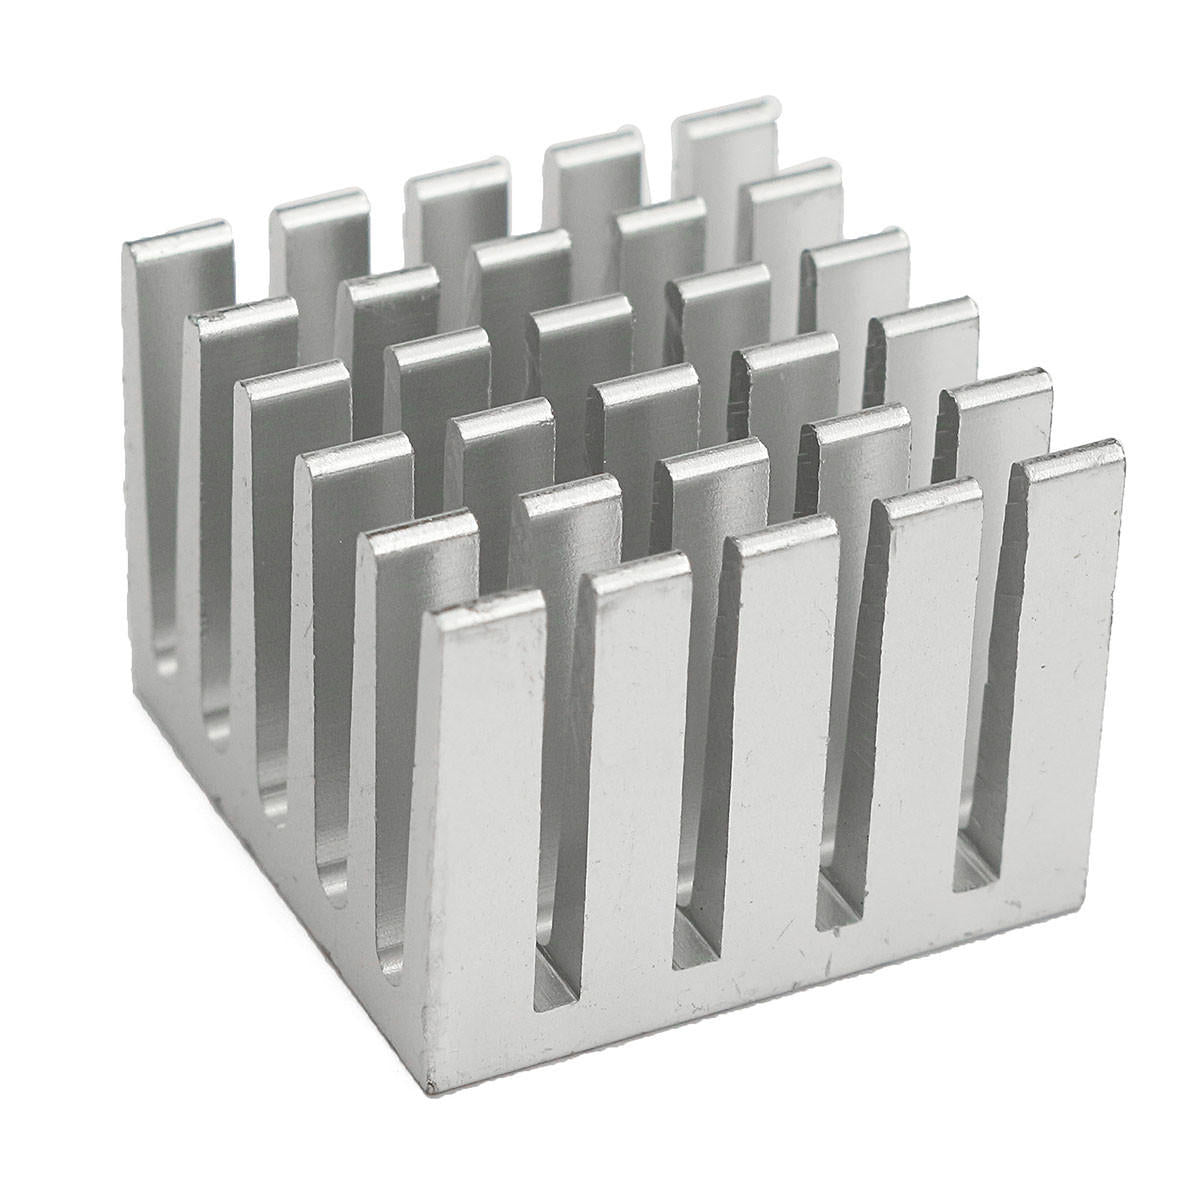 10 stuks 20x20x15mm dhz cpu ic chip koellichaam geëxtrudeerde koeler aluminium koellichaam